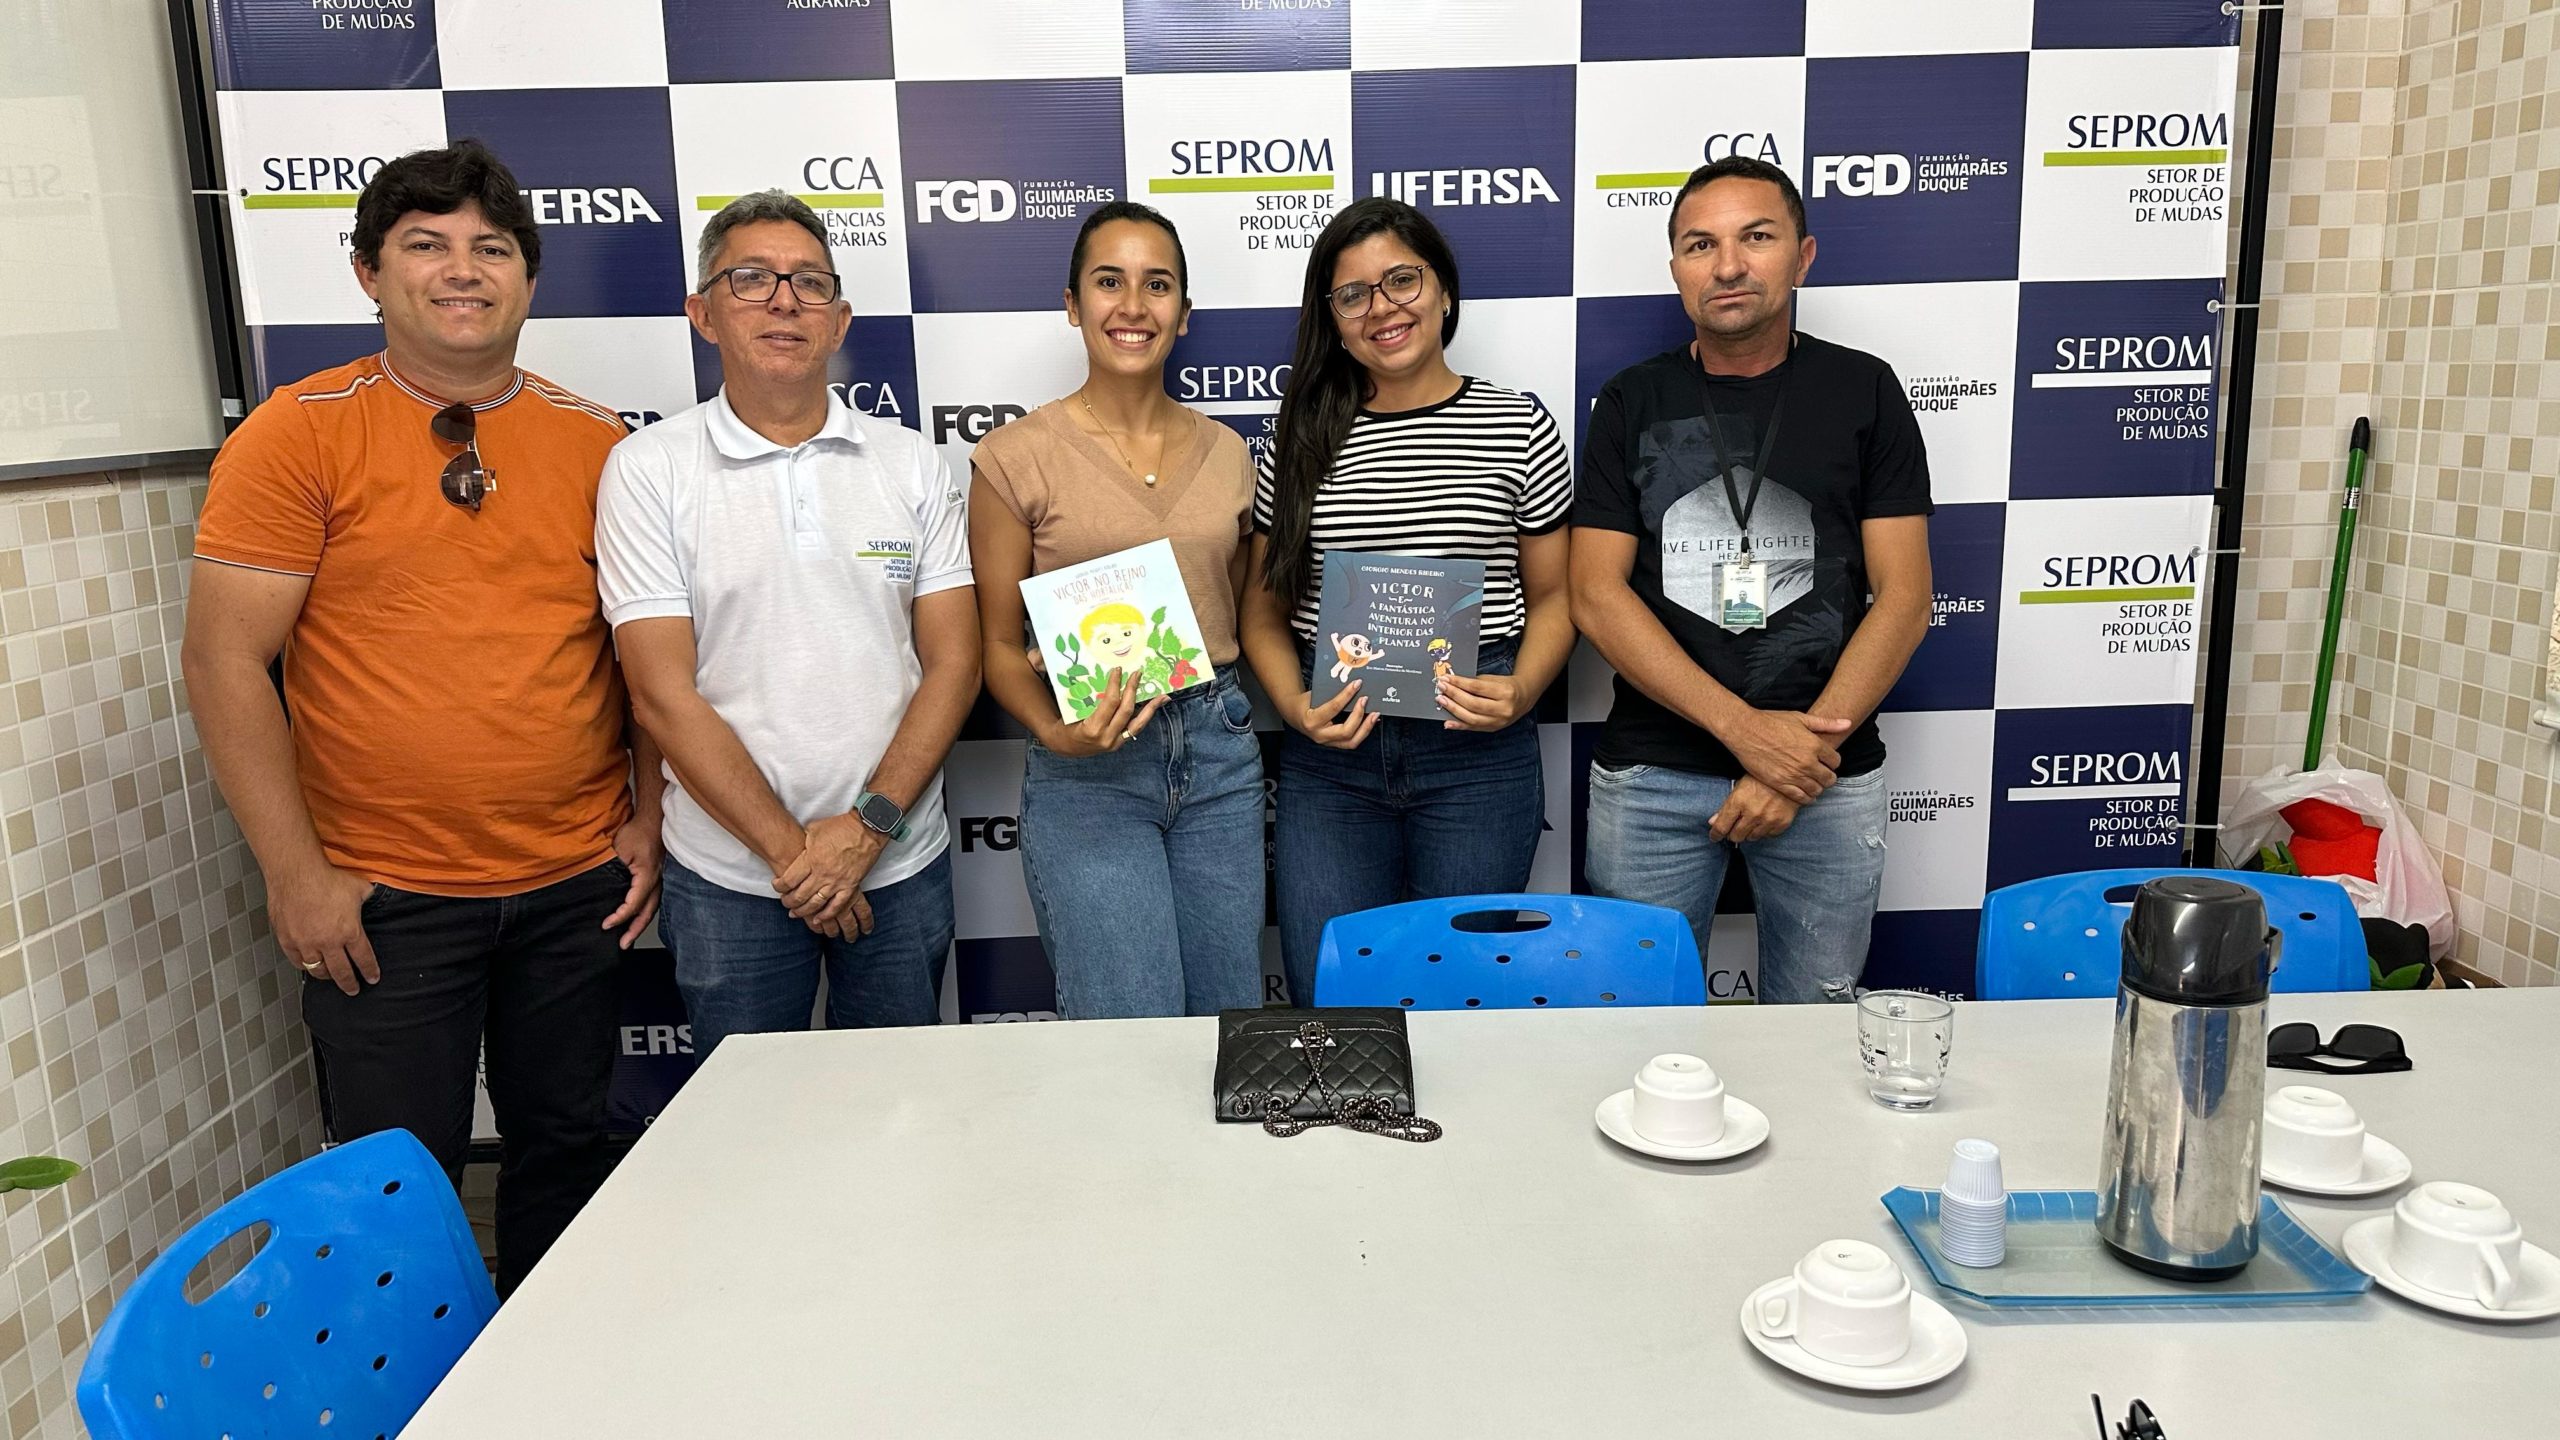 Prefeitura em parceria com Ufersa Mossoró viabiliza projeto “Plantar Saber” em Caraúbas